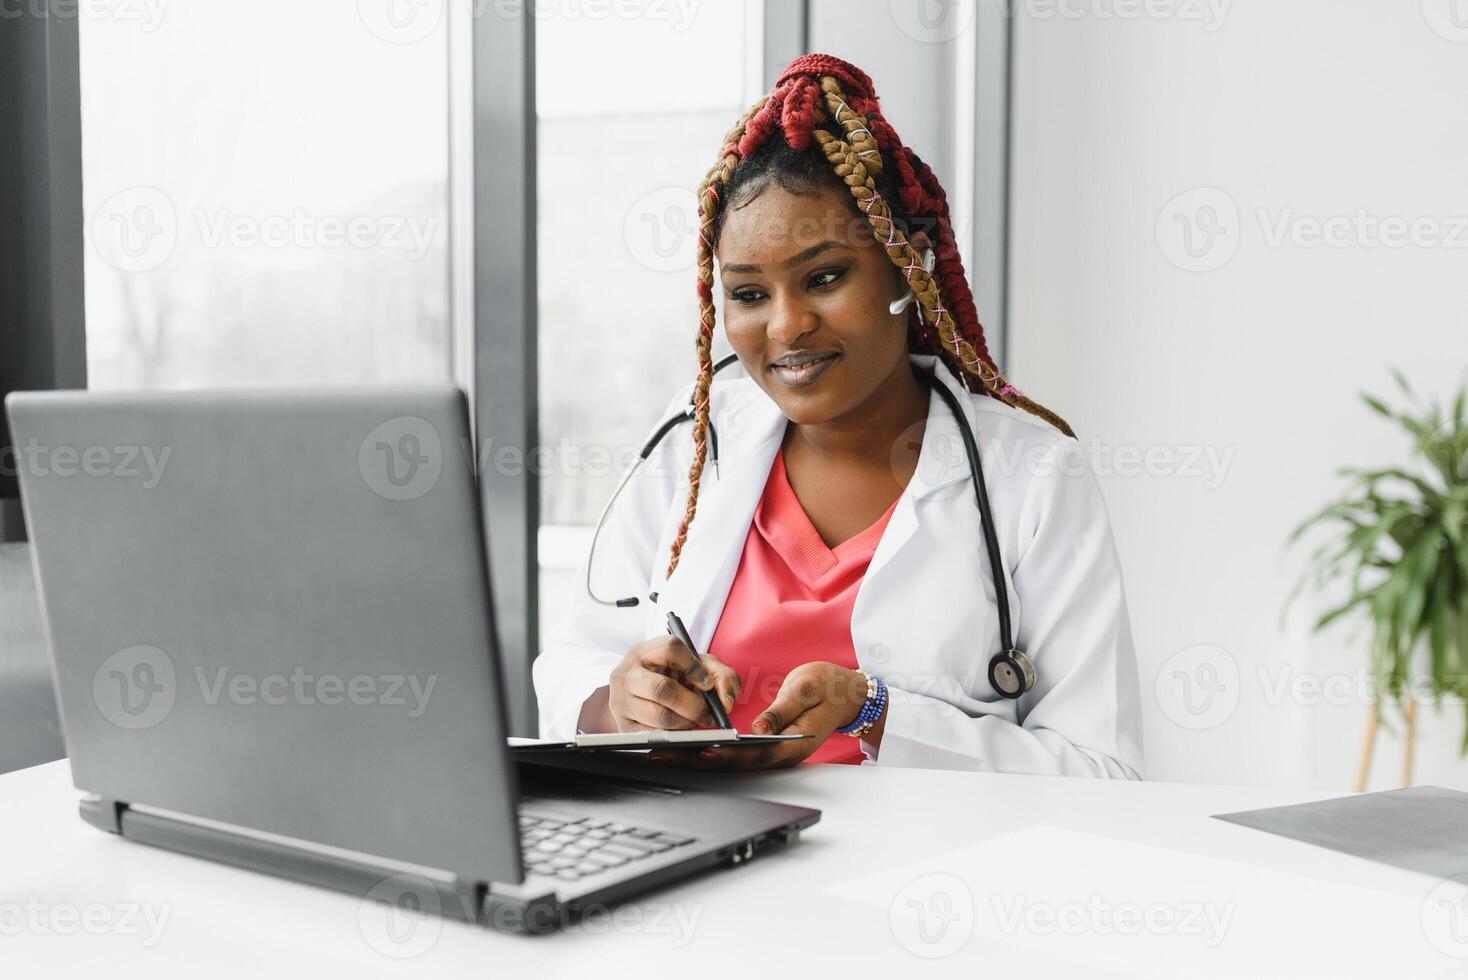 medicinale, in linea servizio e assistenza sanitaria concetto - contento sorridente africano americano femmina medico o infermiera con cuffia e il computer portatile avendo conferenza o video chiamata a Ospedale. foto